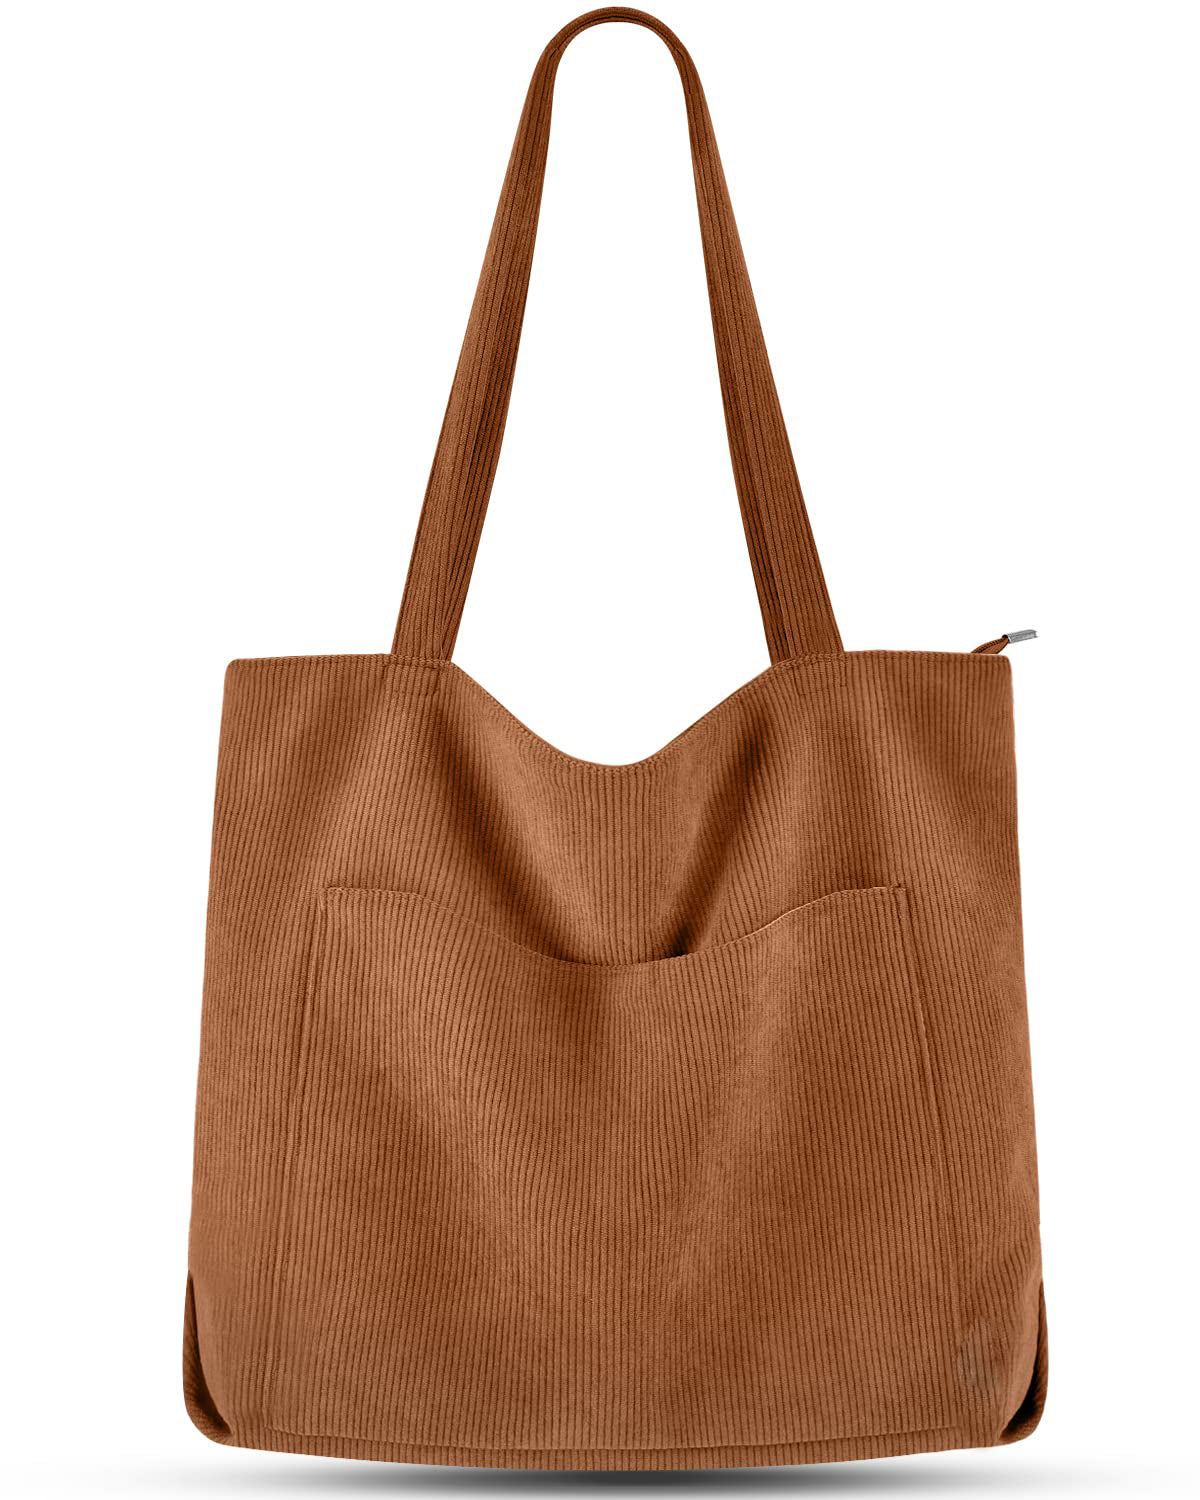 Handbag Bag Shopper Large Shoulder Bag Corduroy Bucket Bag Fabric Bag for College School Work Travel Shopping